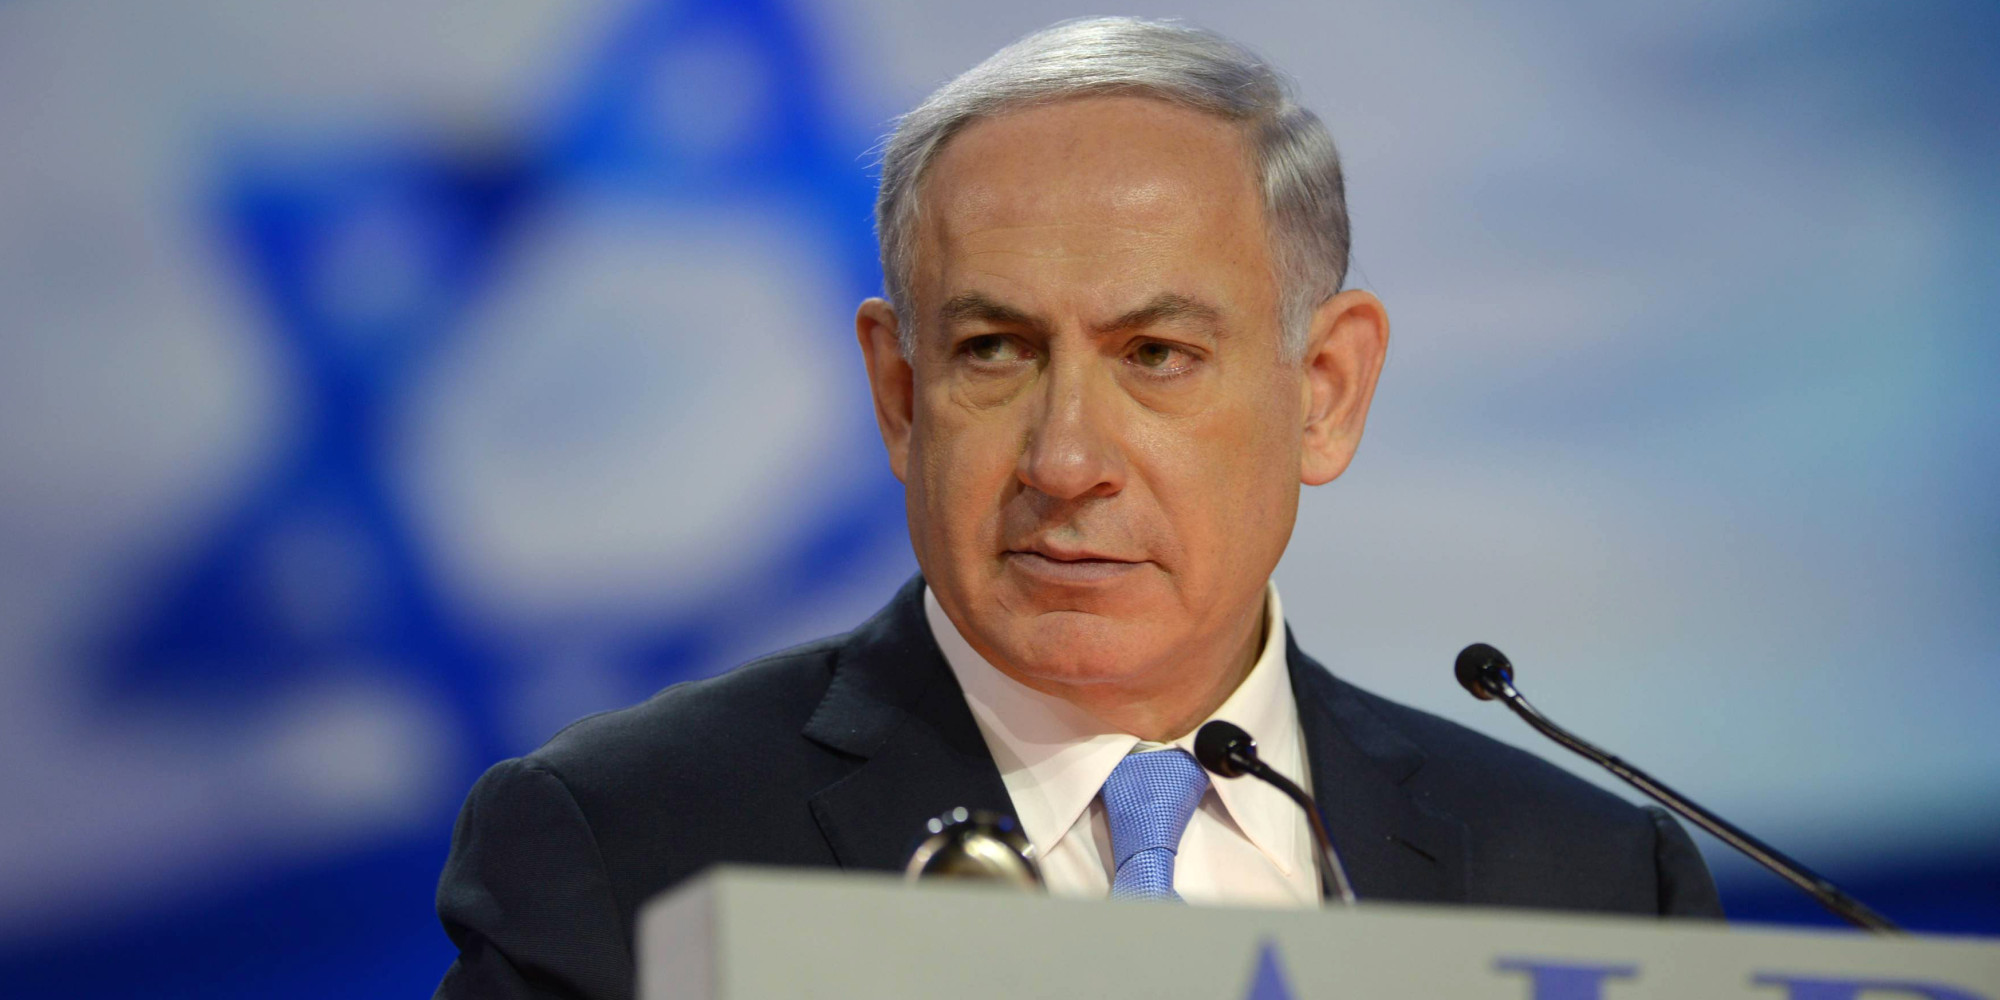 Μπ. Νετανιάχου: «Το Ισραήλ δεν θα επιτρέψει πυρηνικά όπλα στα χέρια αυτών που απειλούν την ύπαρξή του»